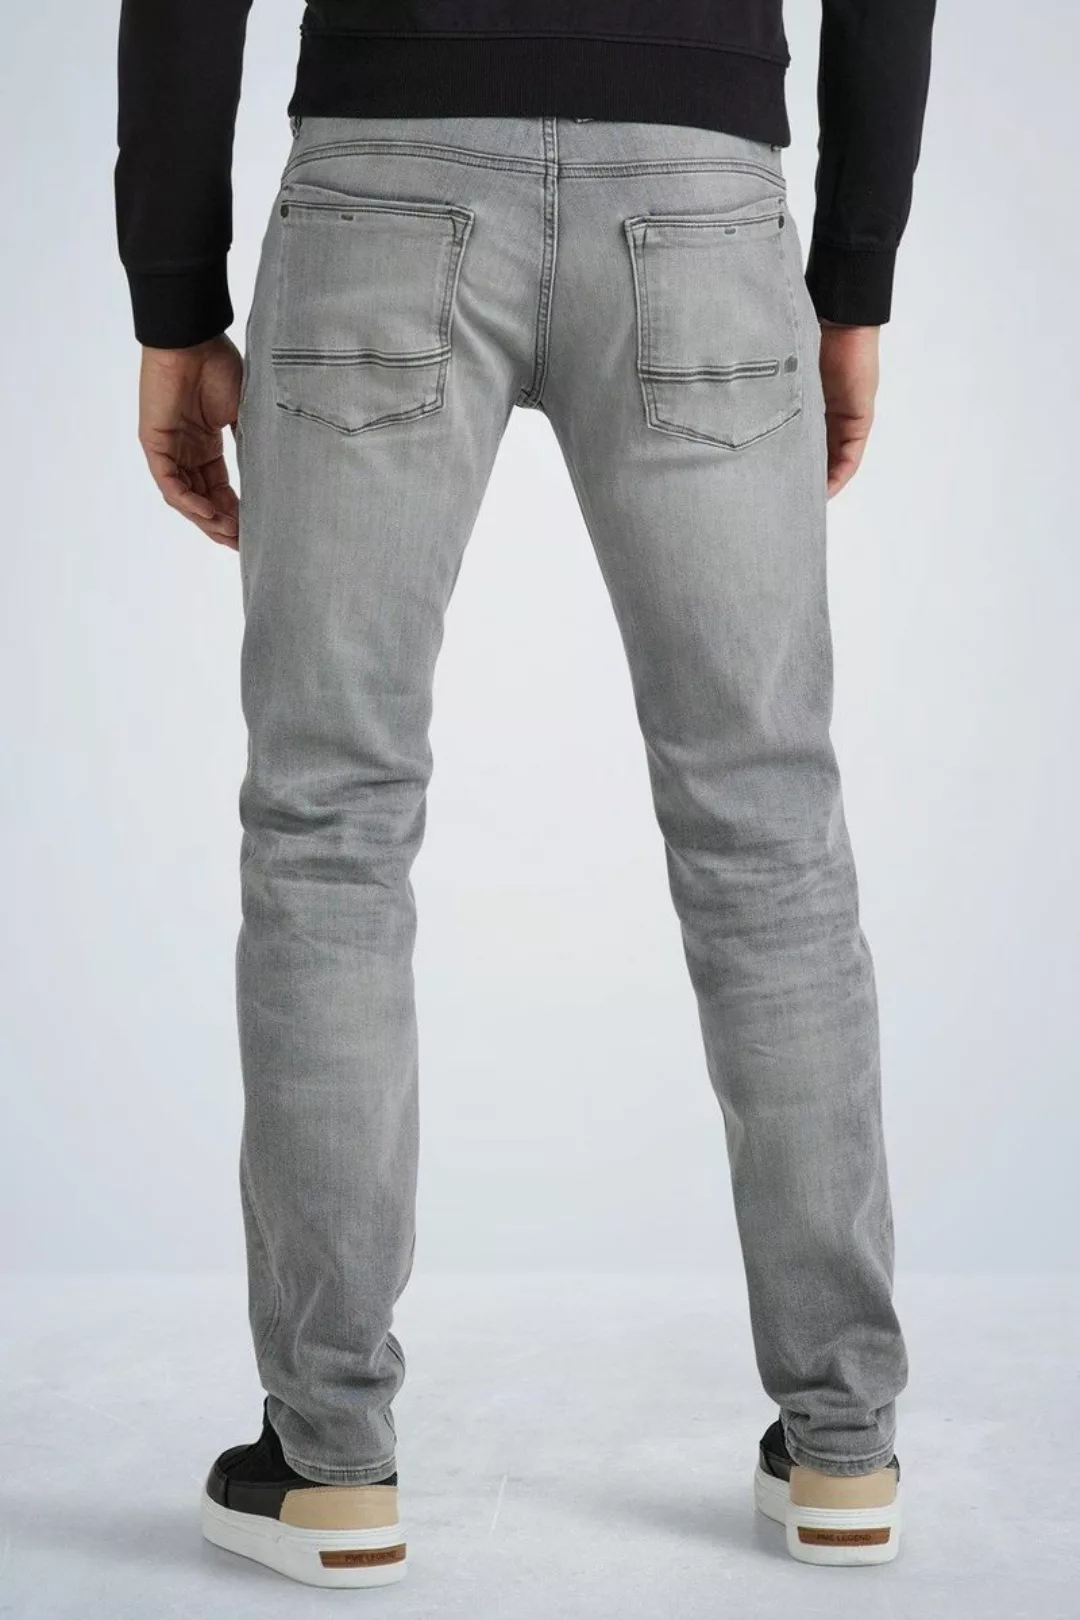 PME Legend Commander 3.0 Jeans Grau - Größe W 34 - L 34 günstig online kaufen